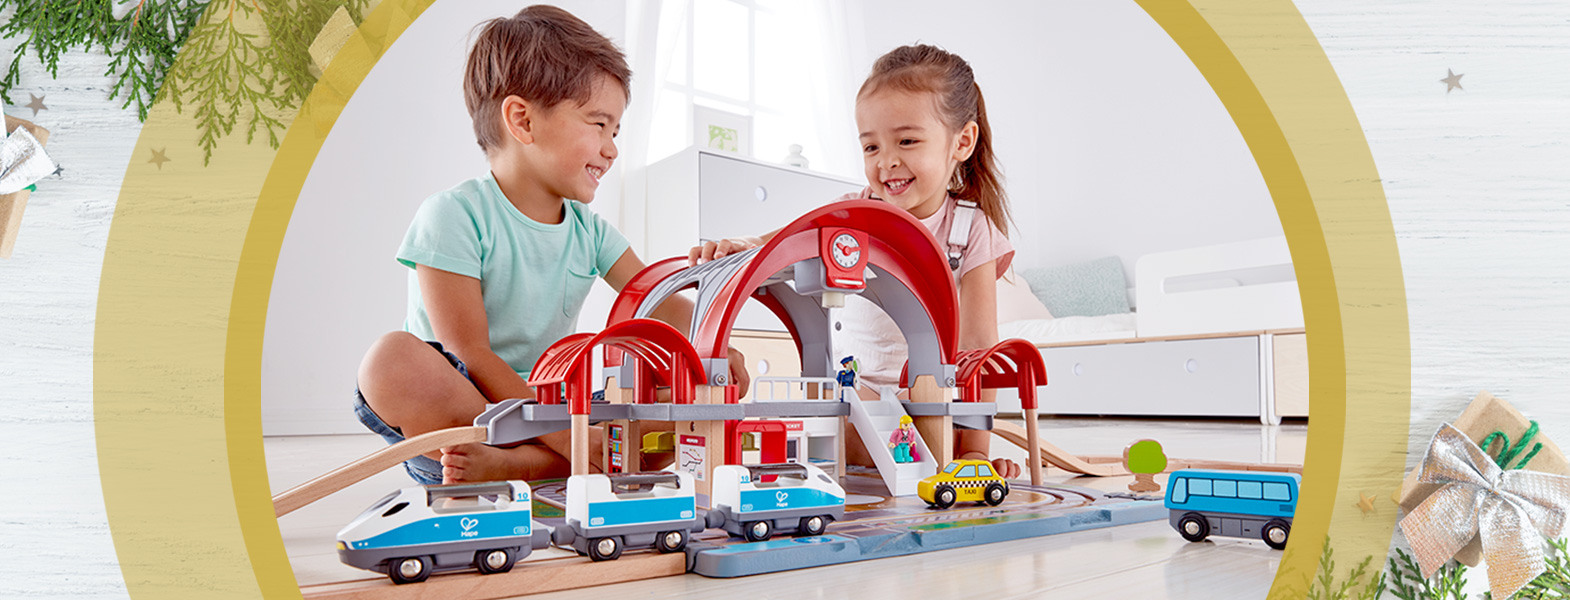 Zwei Kinder spielen mit einer Holzeisenbahn von Hape, daneben steht in goldener Schrift: Holzspielzeug: Eisenbahn, Bausteine & Co.